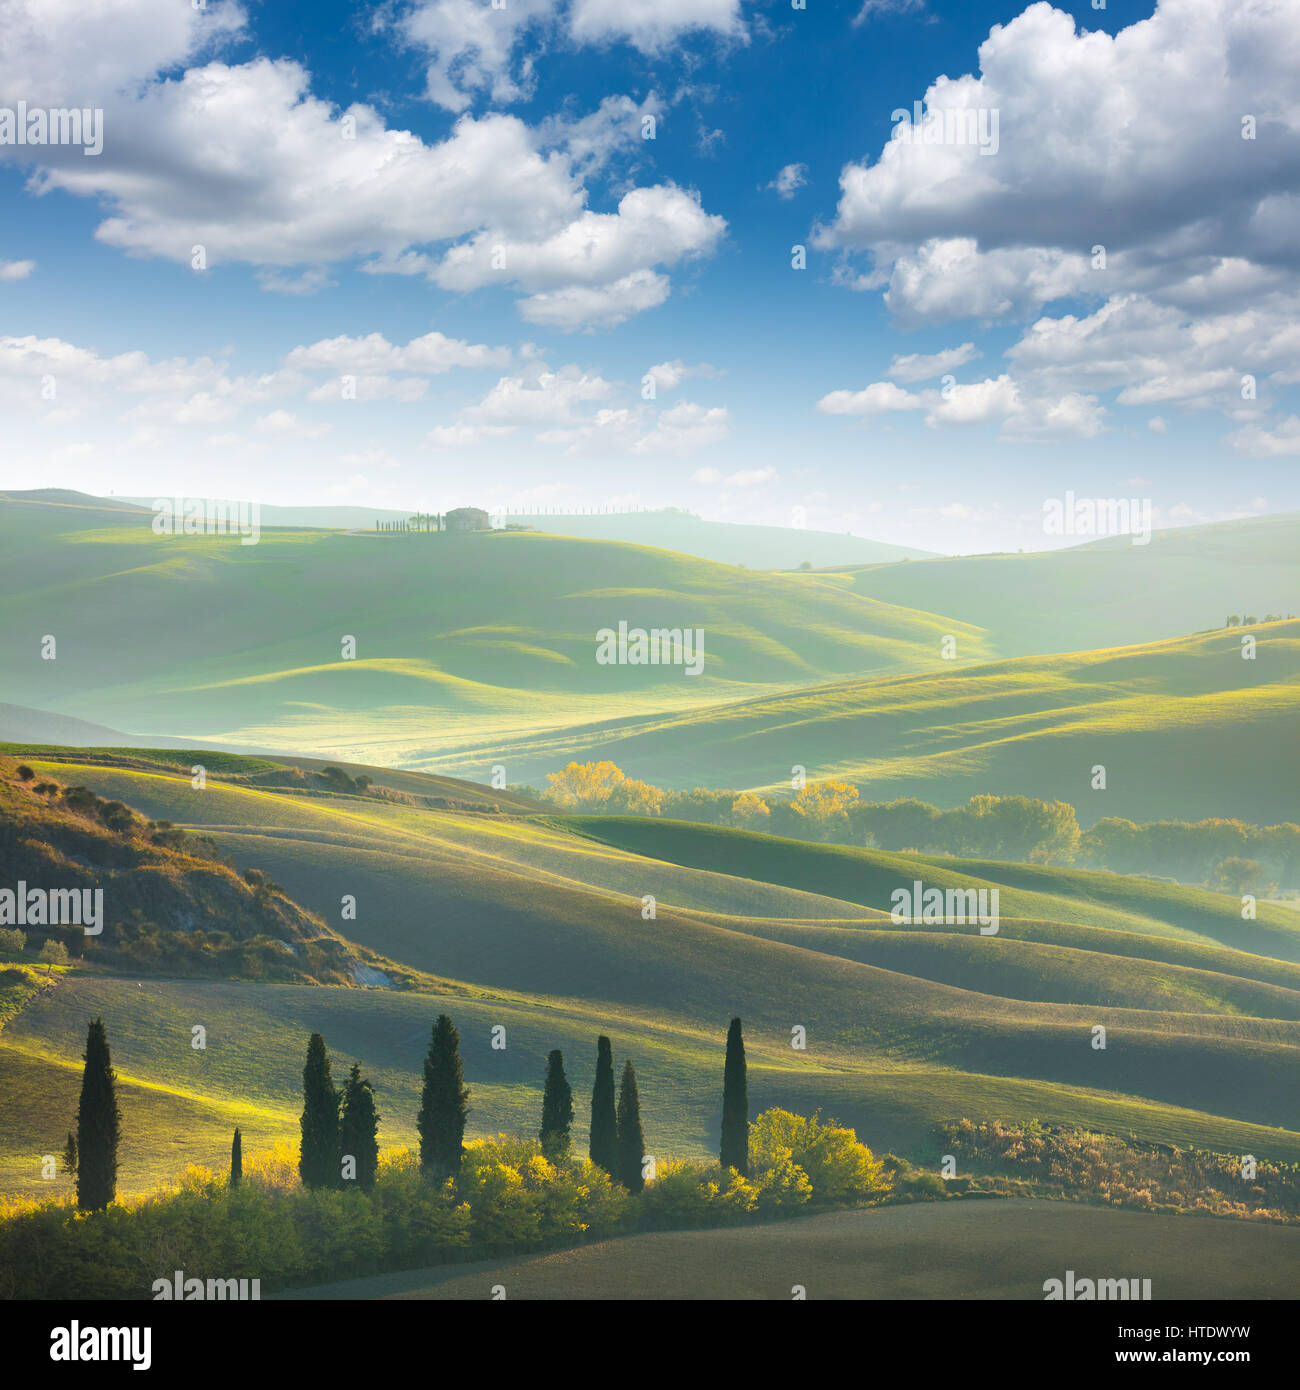 Fresco e verde paesaggio della Toscana in primavera - onda colline, cipressi secolari, erba verde e il bel cielo azzurro. Toscana, Italia, Europa Foto Stock